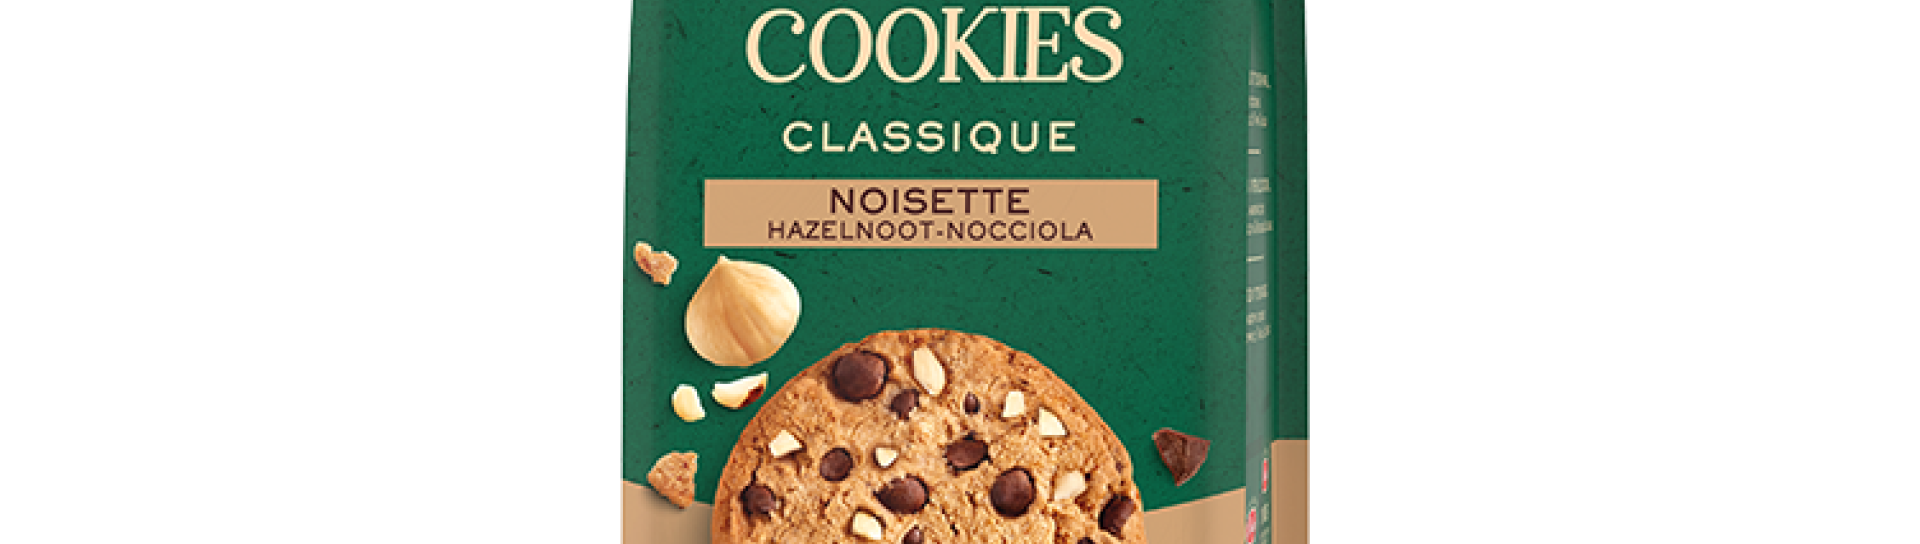 Cookies Classique - Noisette